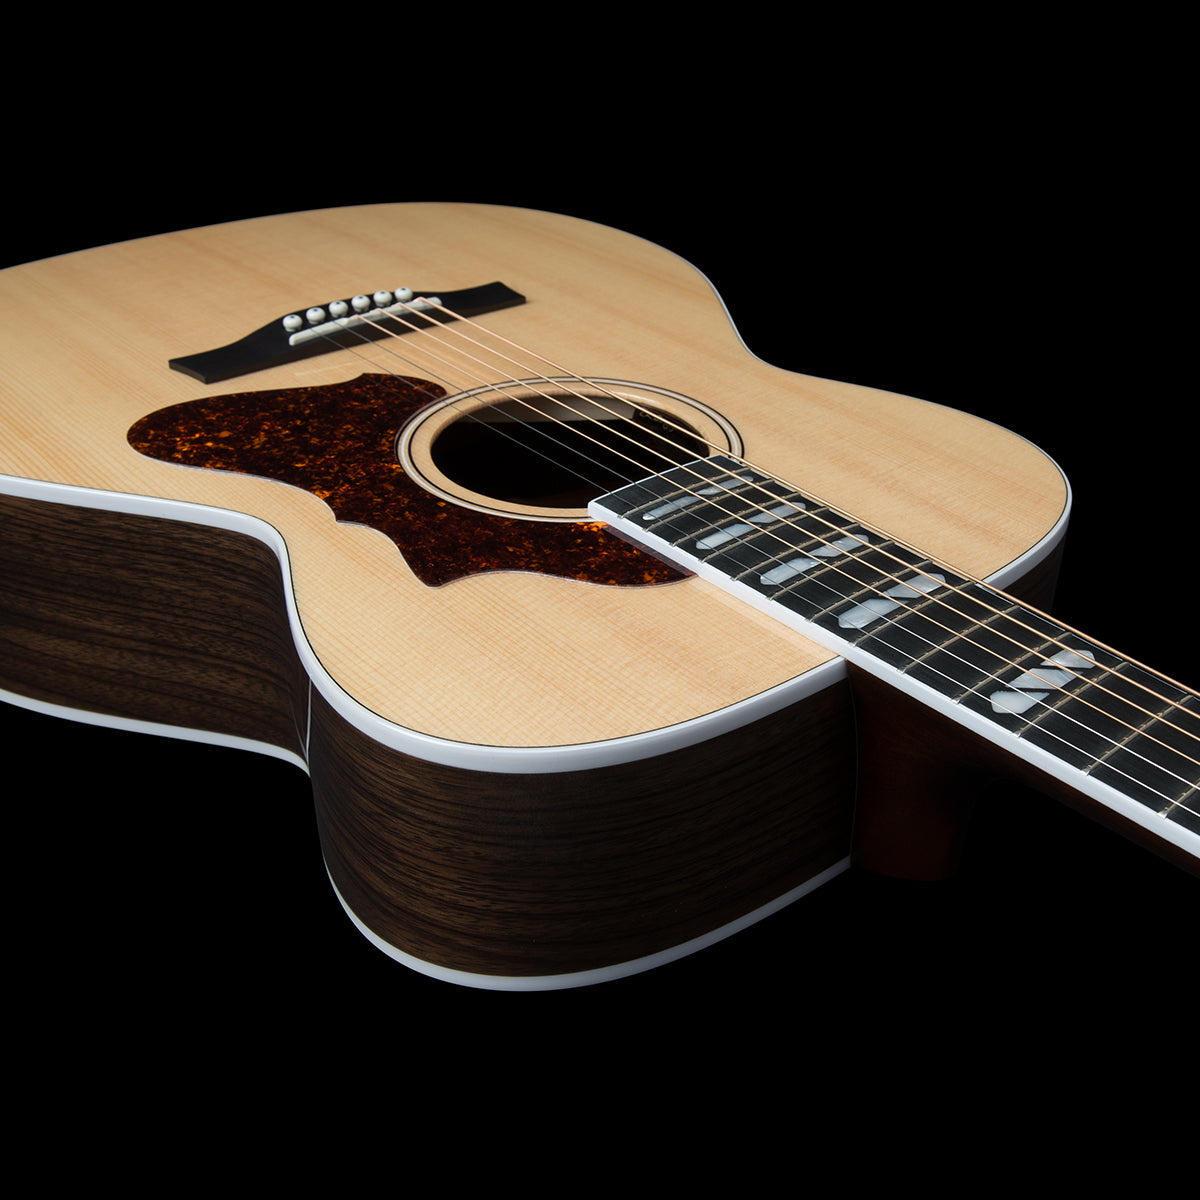 Godin Fairmount CH LTD HG Electro-Acoustic Guitar with Bag ~ Natural, Electro Acoustic Guitars for sale at Richards Guitars.